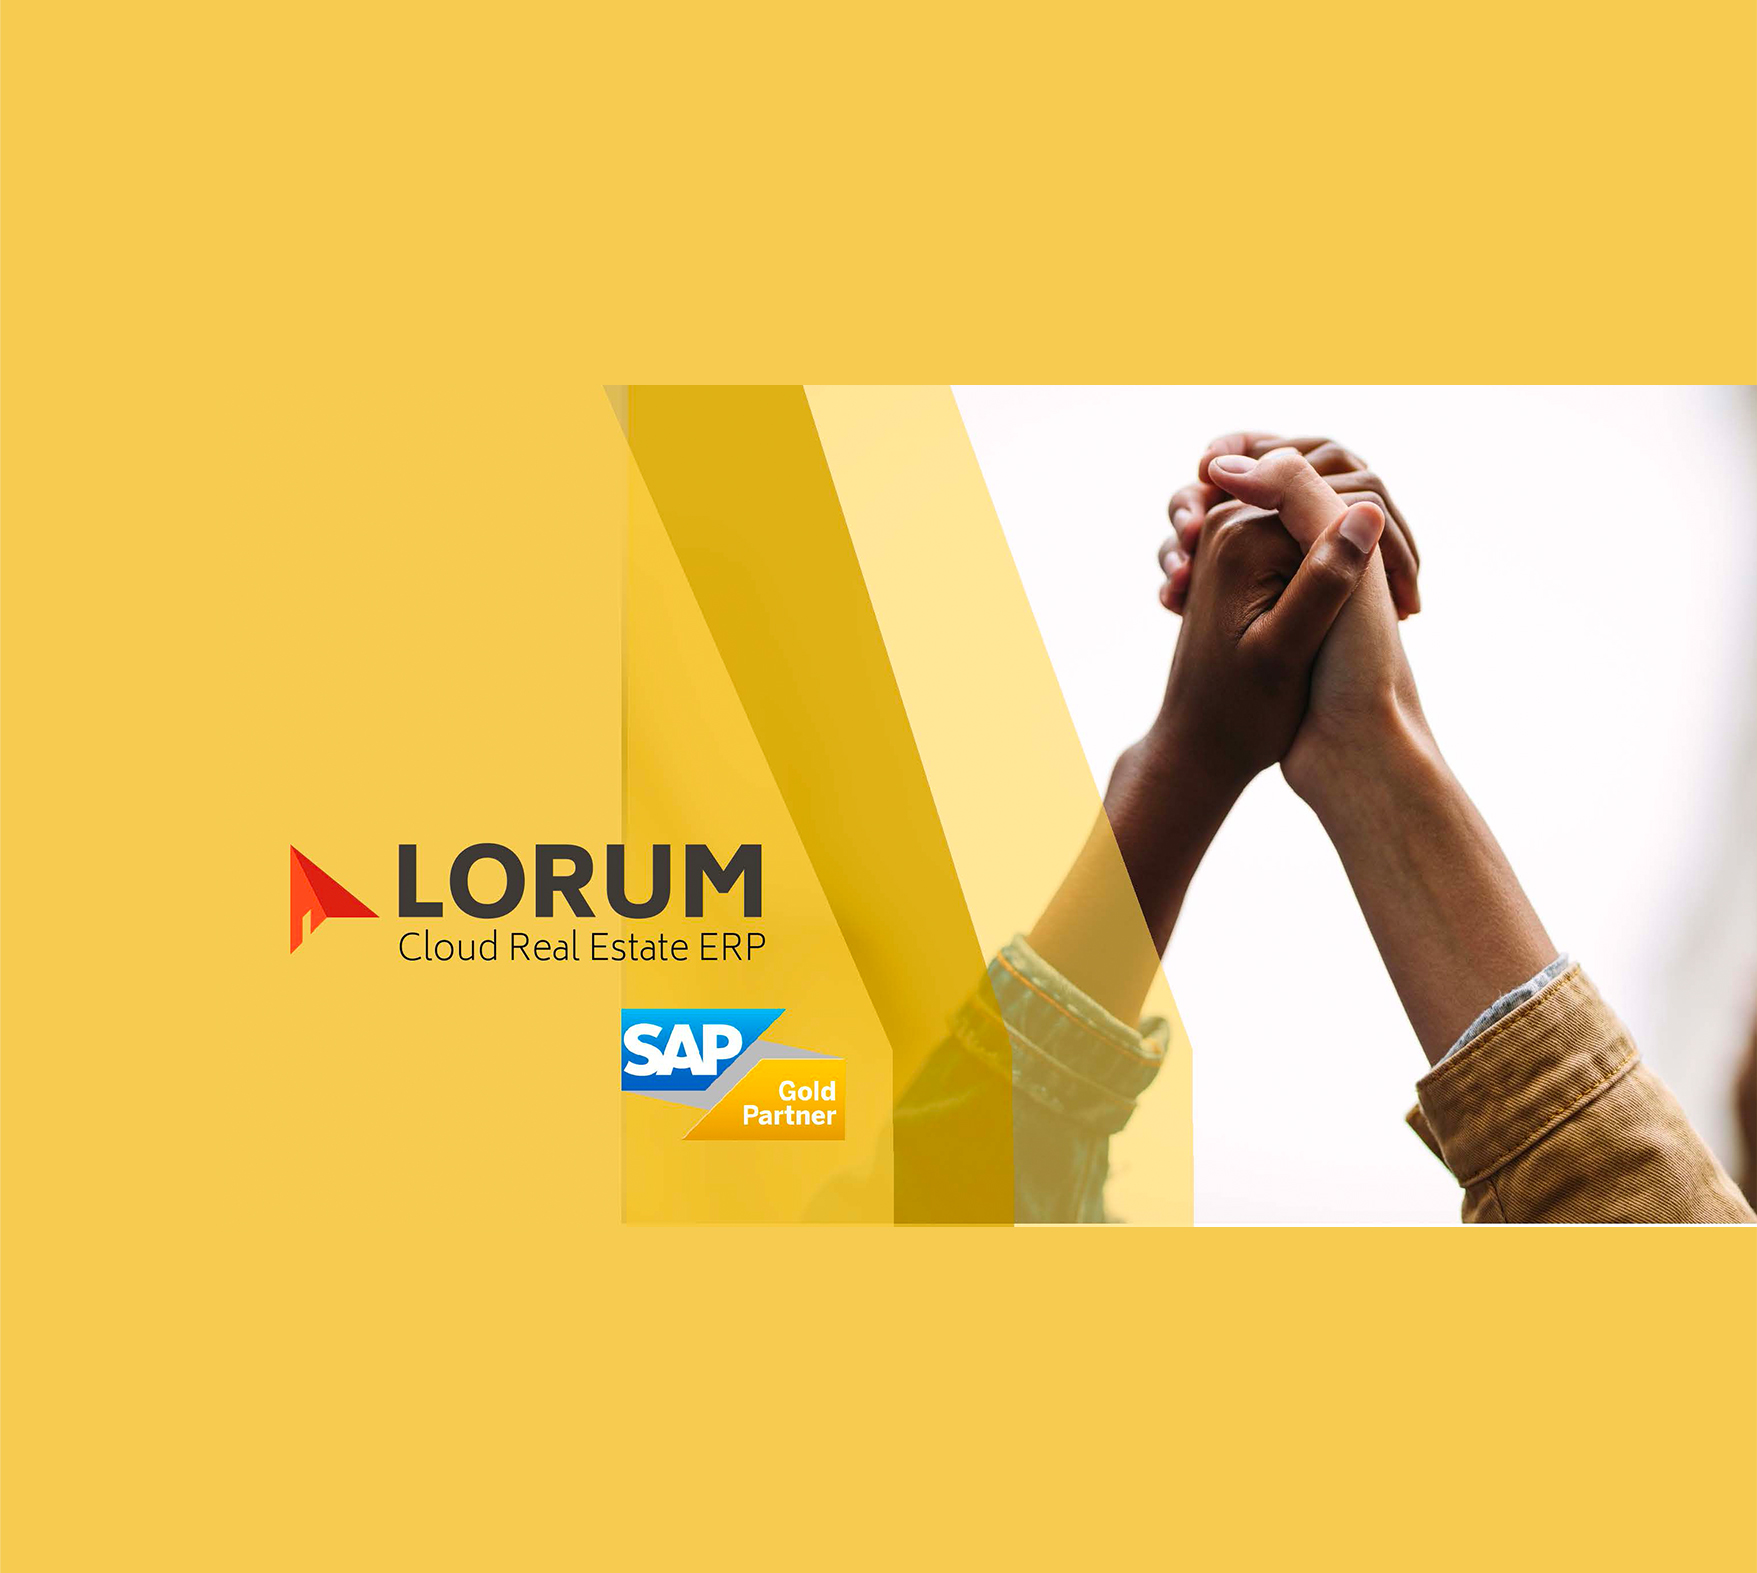 LORUM obtiene la distinción Gold Partner de SAP por su solución Lorum4re para todas las actividades del sector inmobiliario